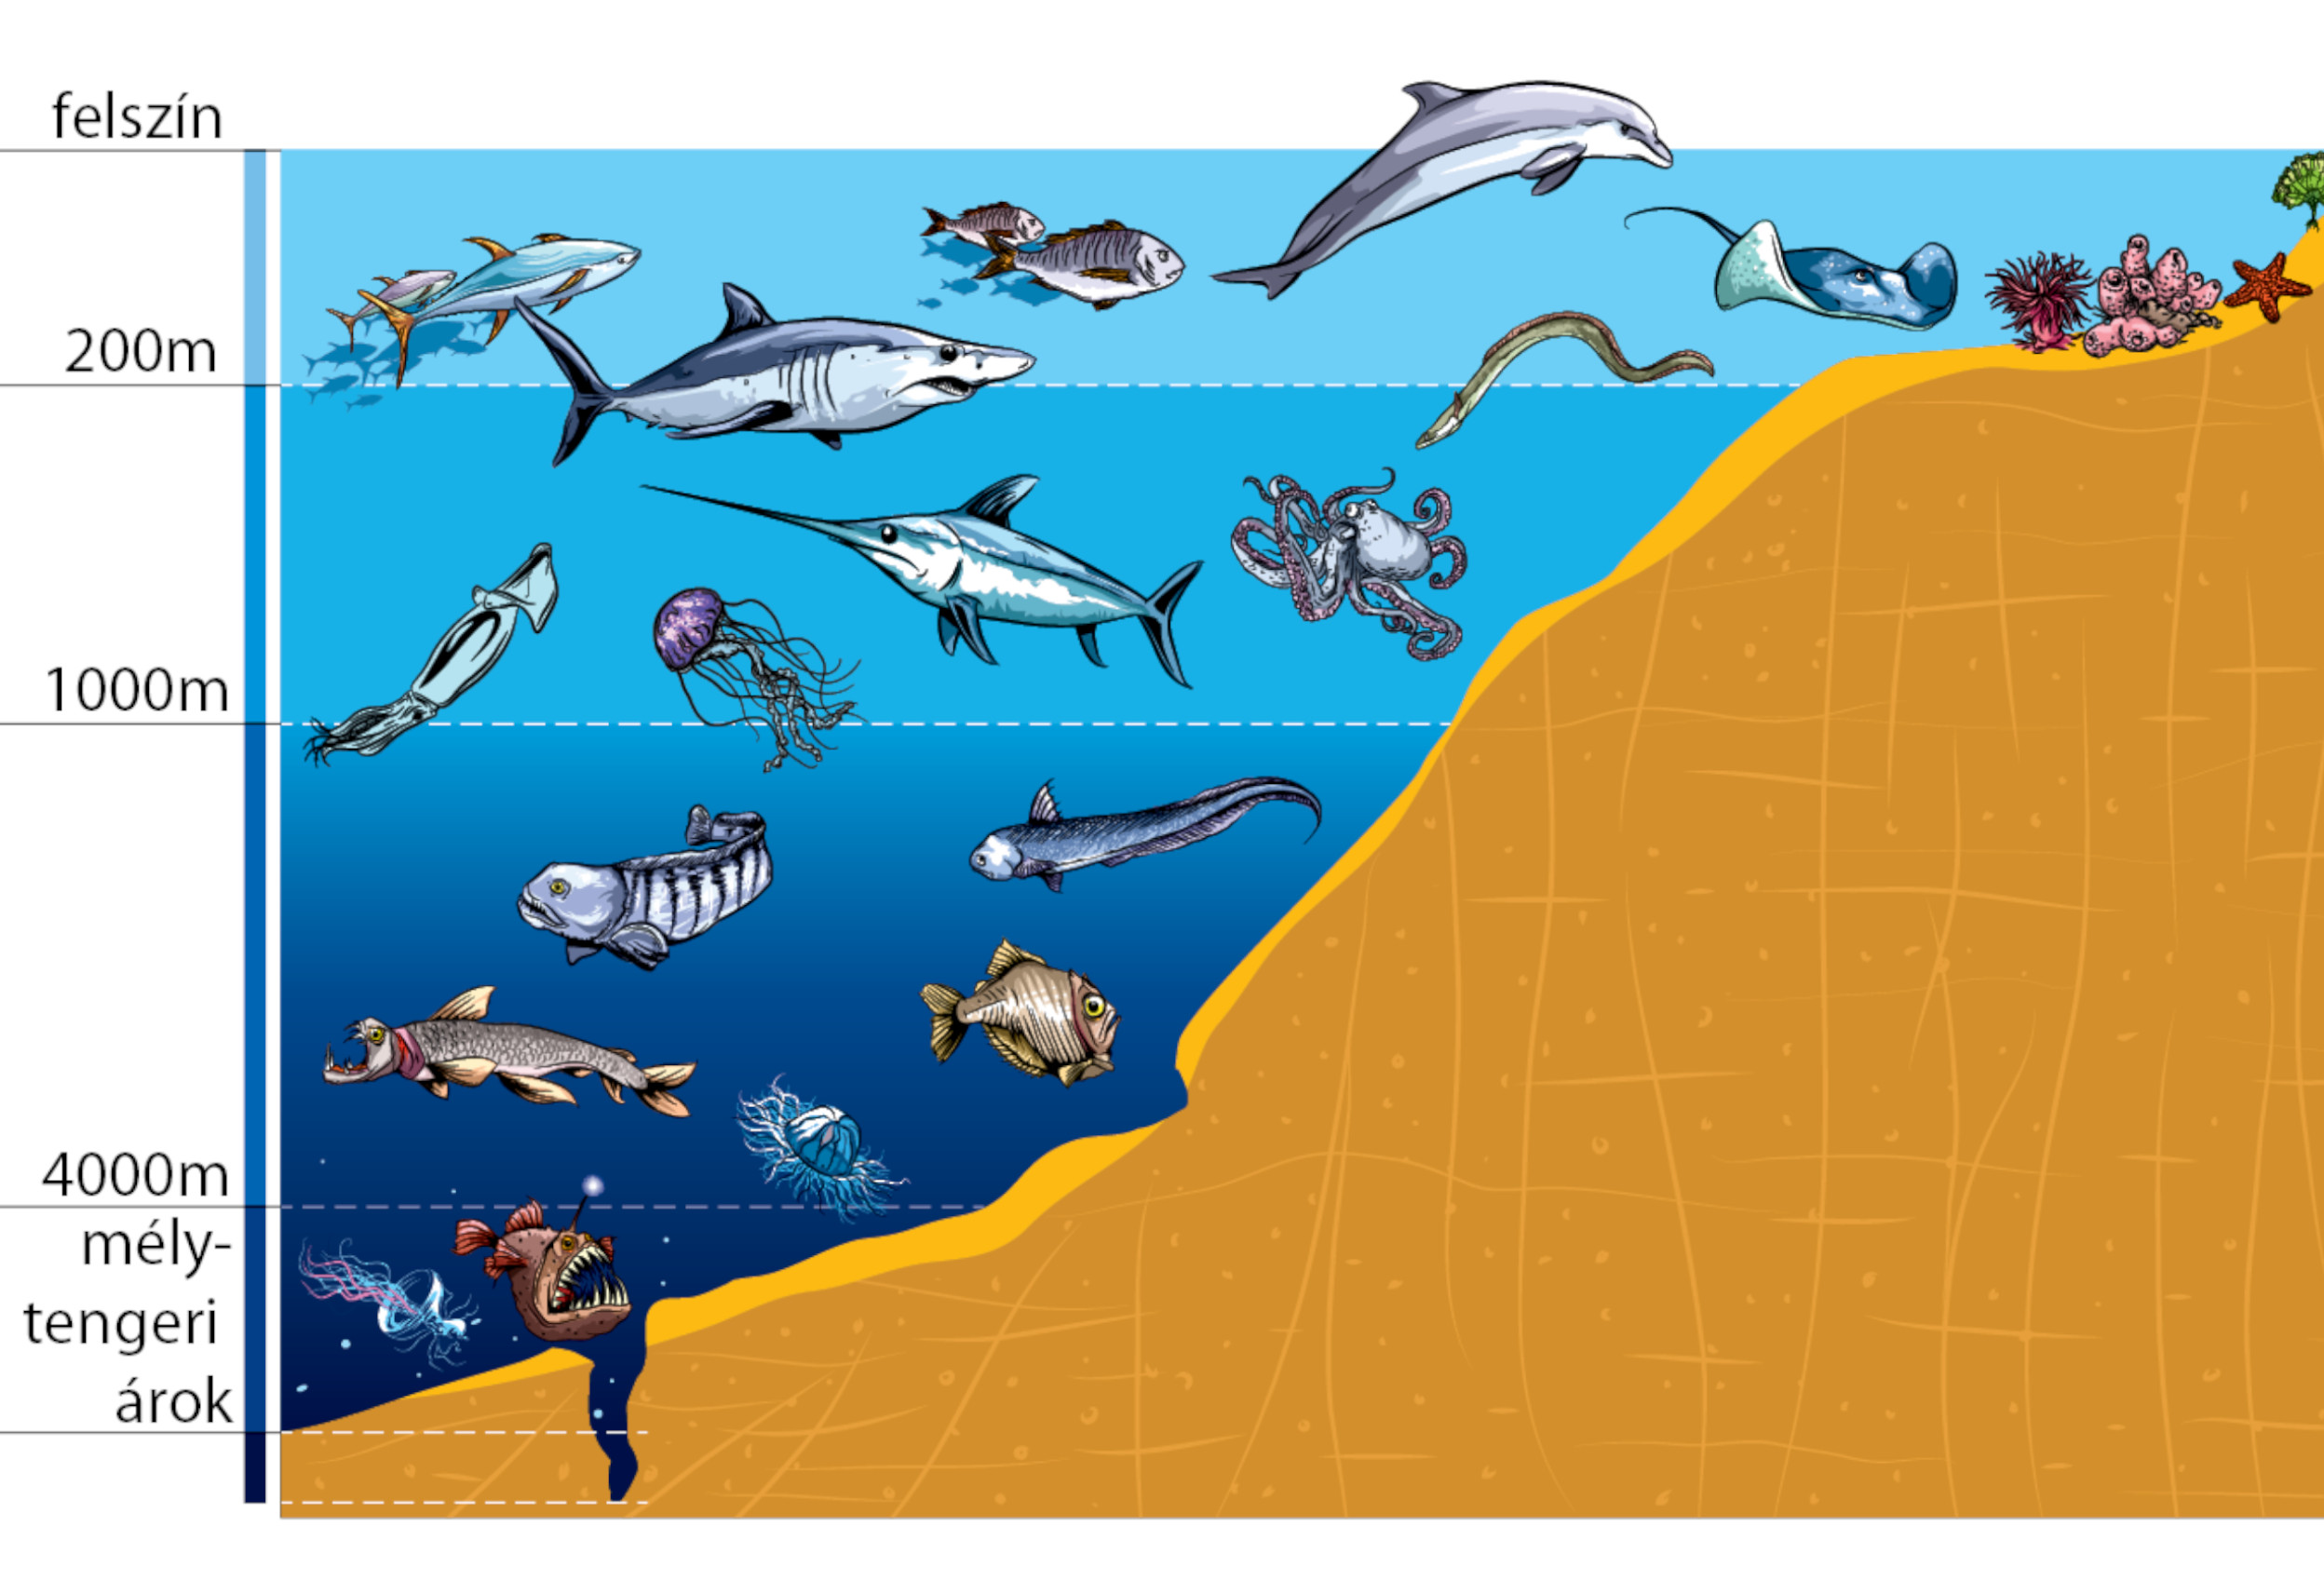 Условия существования живых организмов в океане. Зоны мирового океана и их обитатели. Жизнь организмов в морях и океанах. Слои океана. Обитатели моря по глубине.